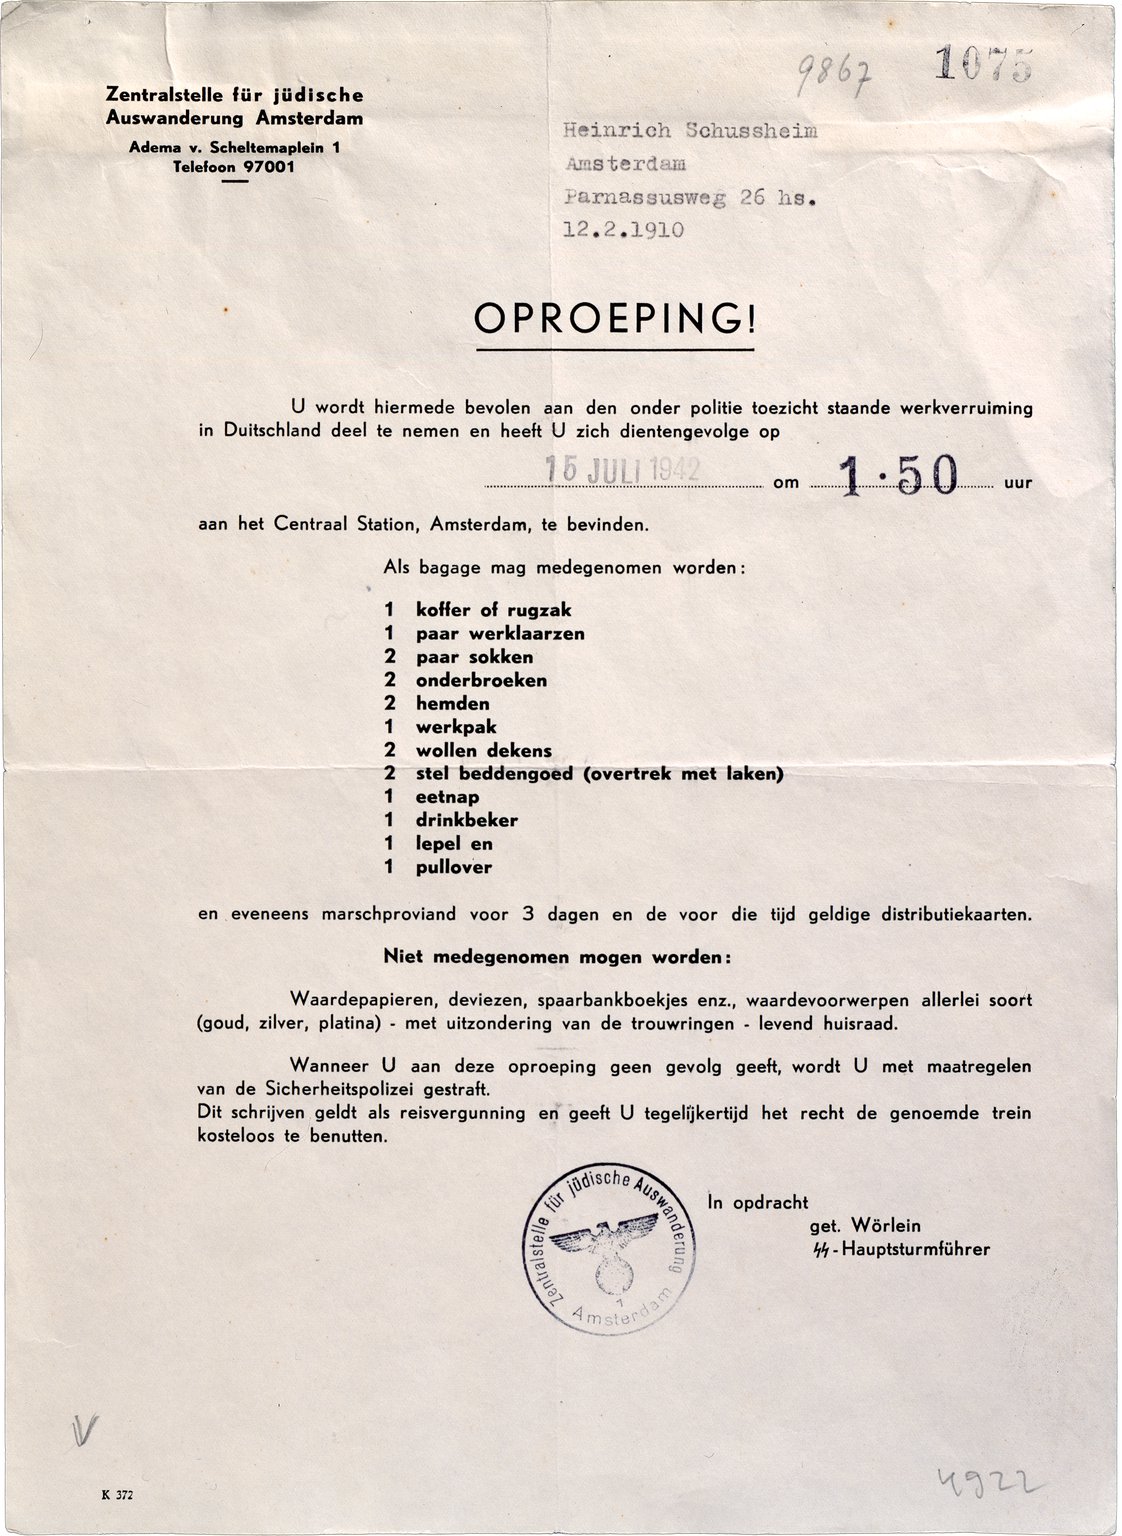 De opgeroepen Joden krijgen bij de Zentralstelle für jüdische Auswanderung dit formulier. Daar staat precies op wat zij mee mogen nemen, bijvoorbeeld een werkpak en werklaarzen, en wanneer zij moeten vertrekken, 16 juli 1942.